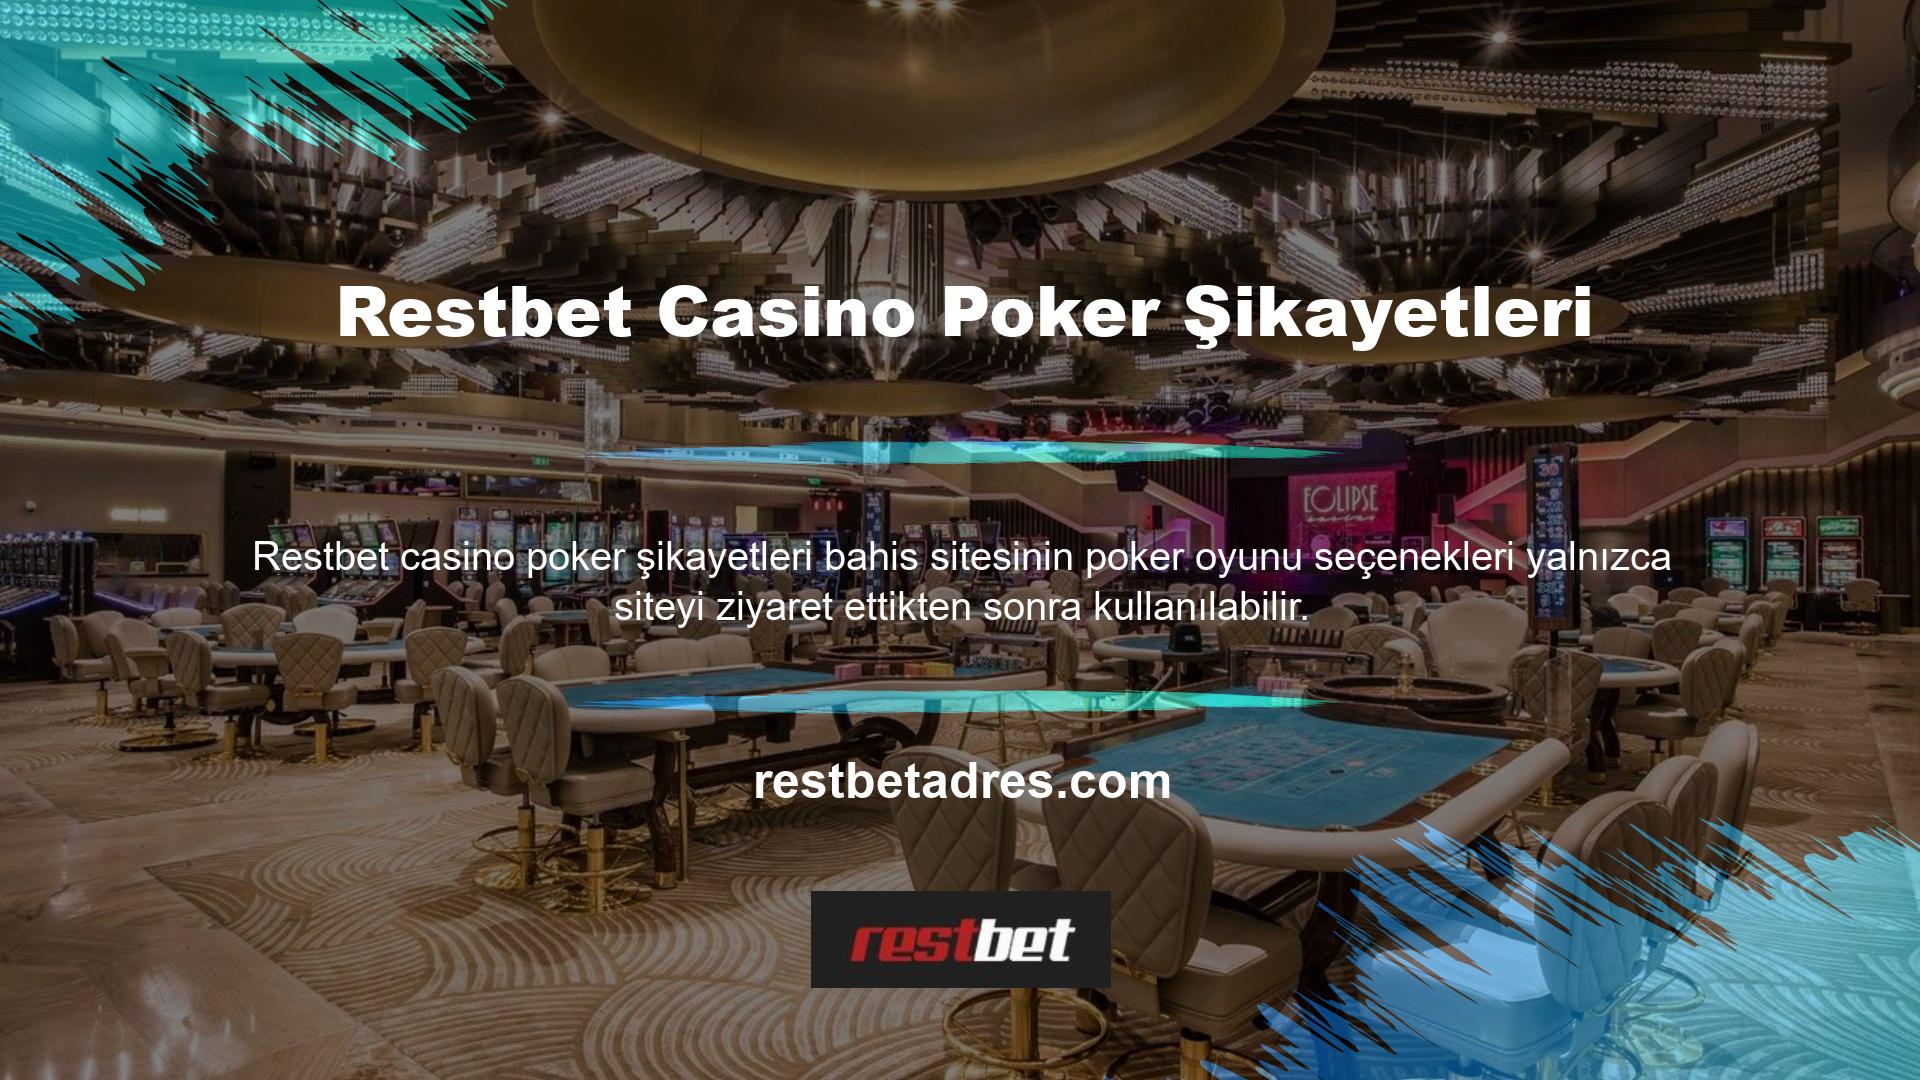 Restbet Casino Poker'in hiçbir şikayet incelemesi yok